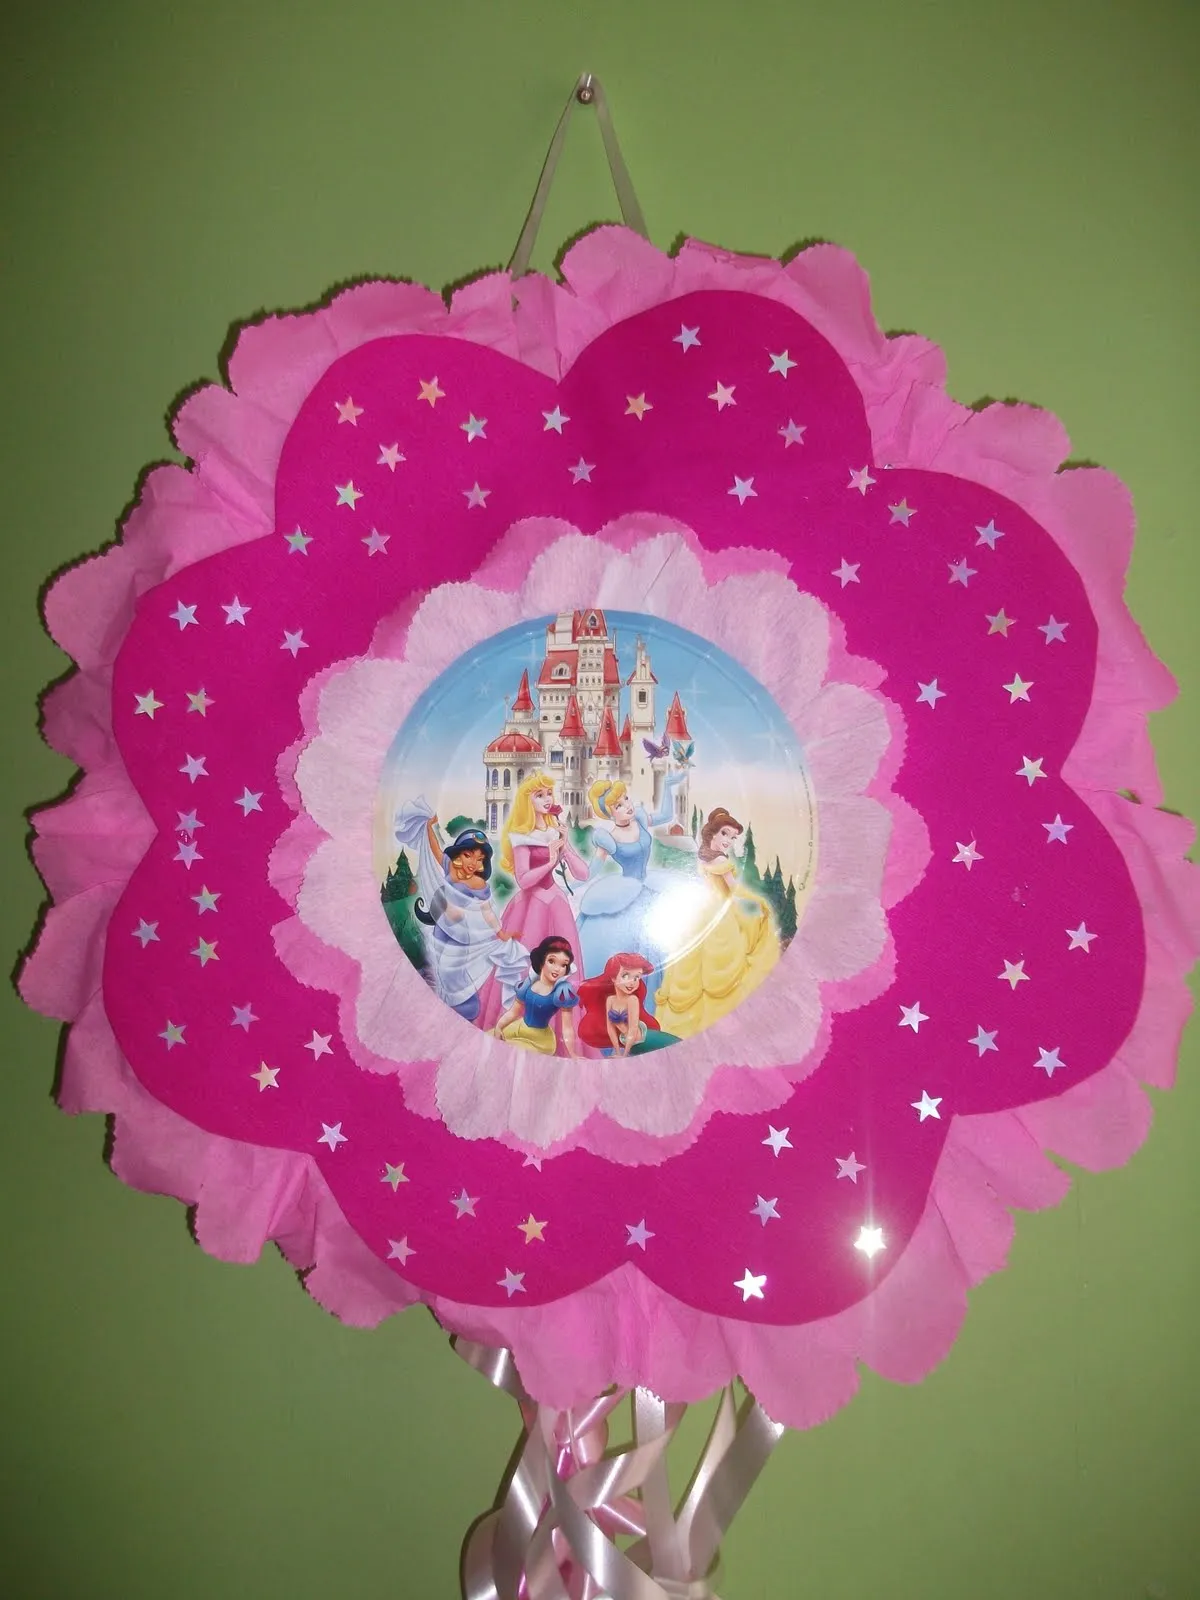 Como hacer piñatas de princesas - Imagui